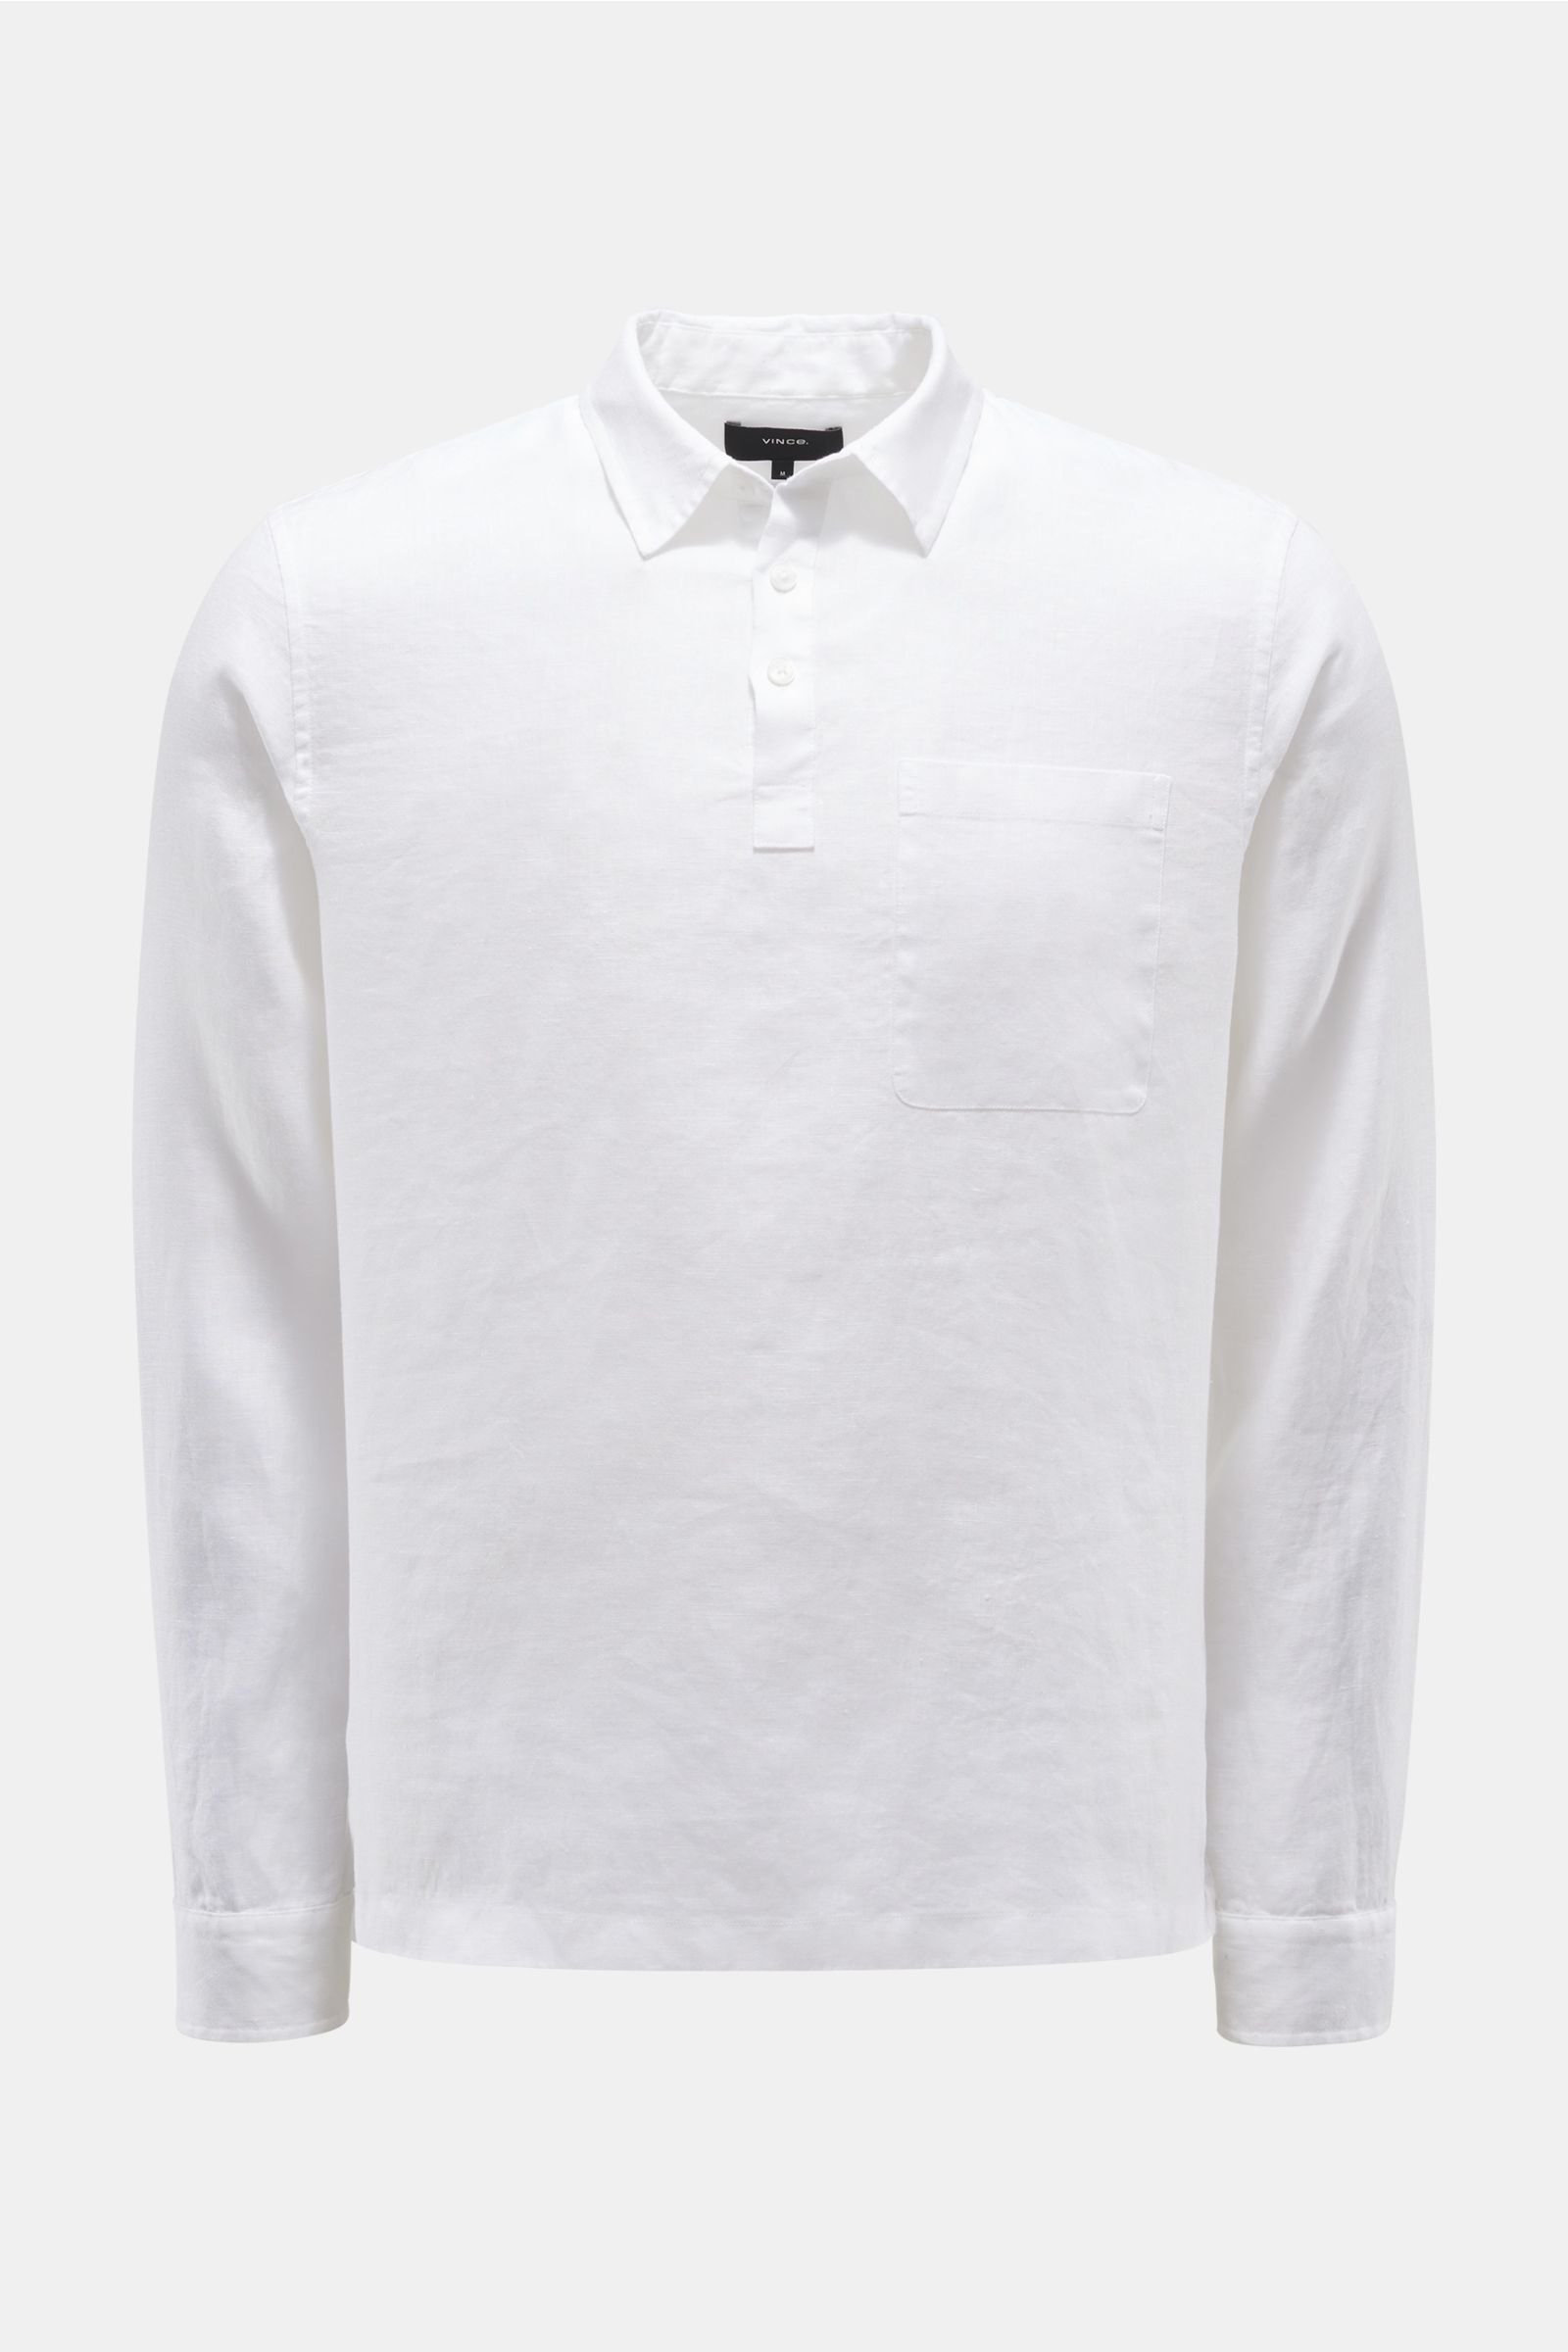 Linen popover shirt slim collar white